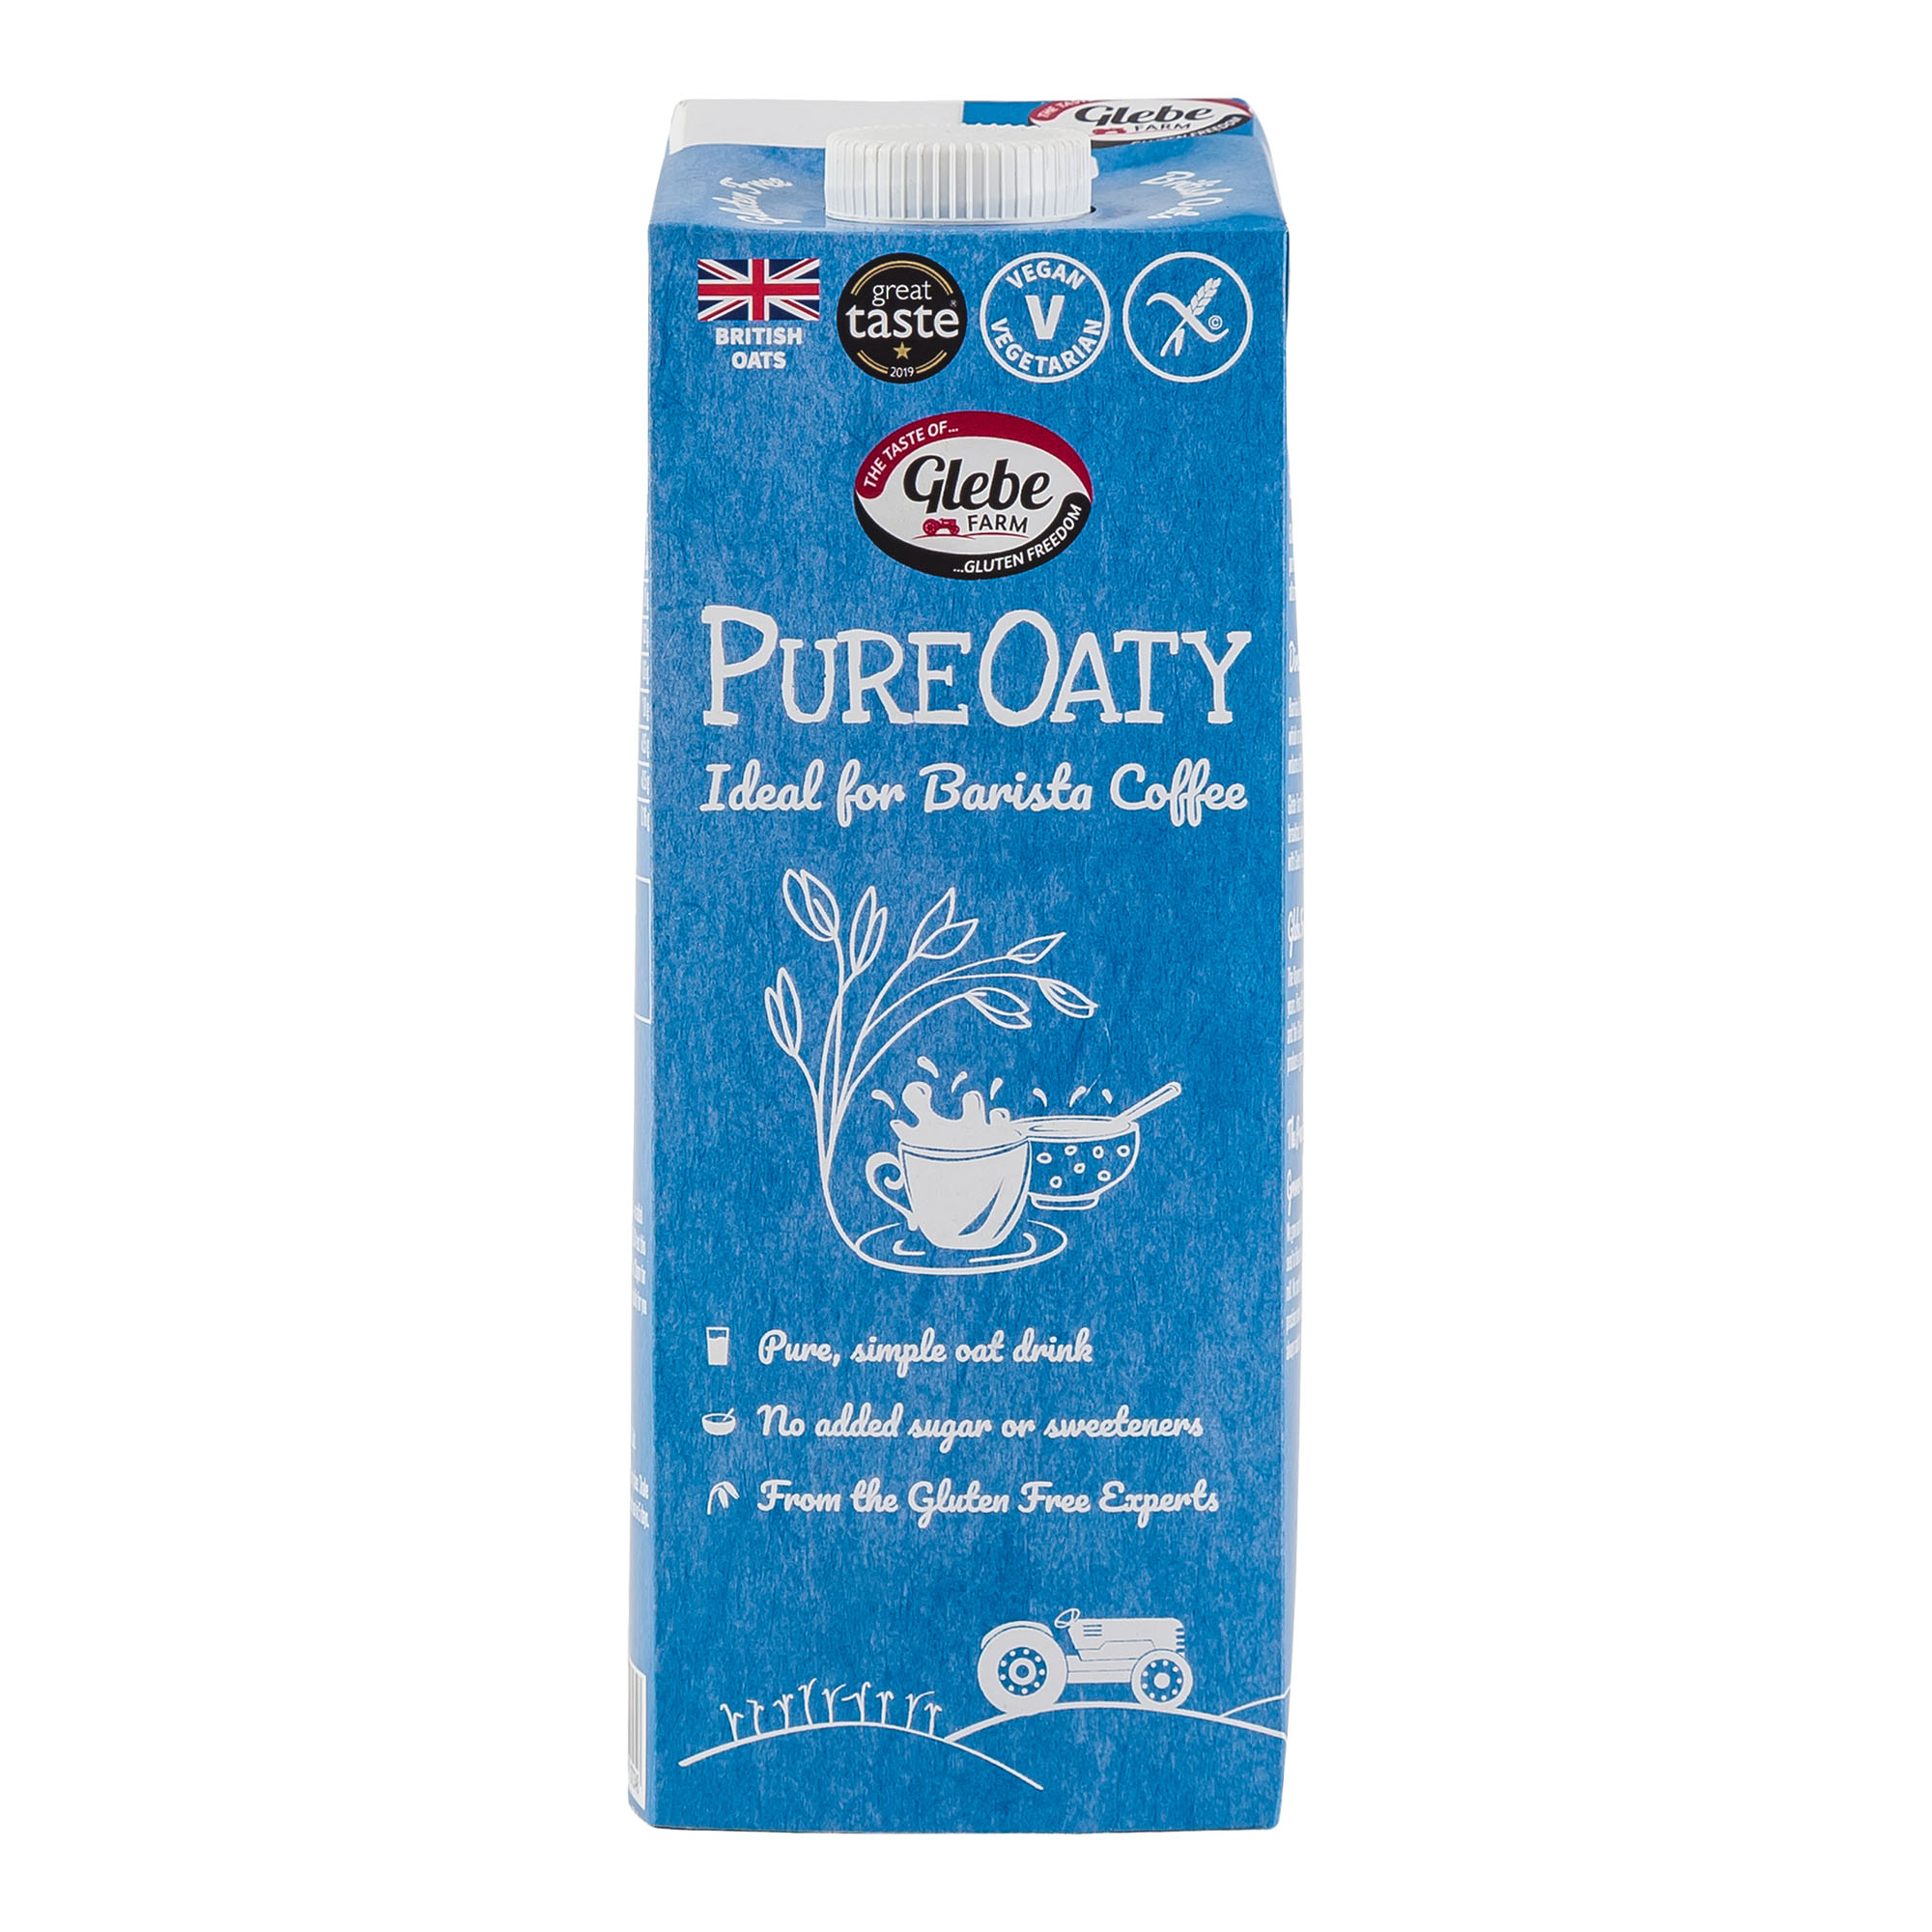 Pure Oaty - Vegan Oat Drink - 1 litre